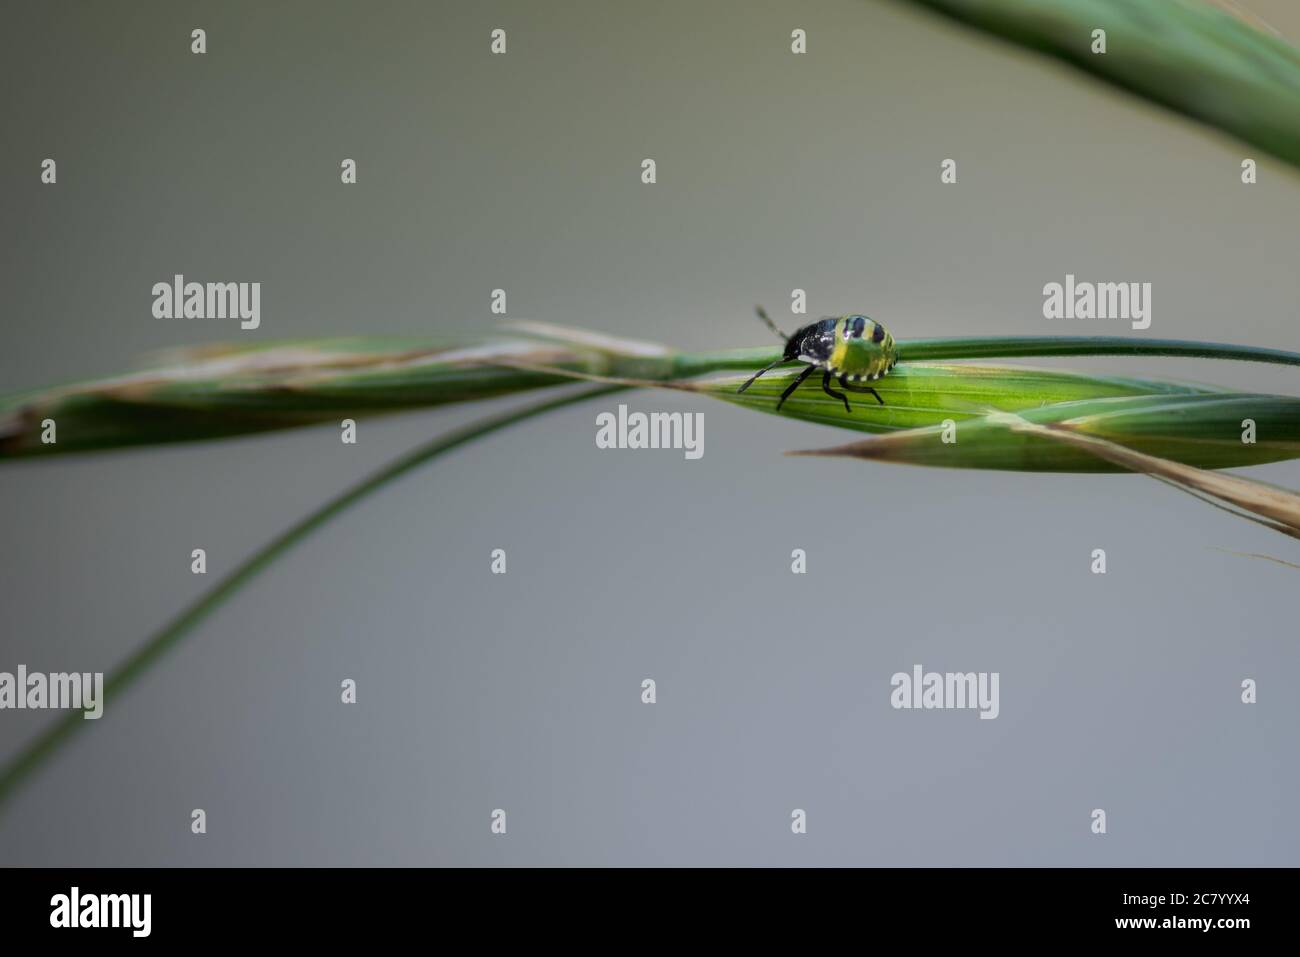 Kleiner grüner Käfer, nezara viridula Mitte instar Nymphe, auf einem Blatt gehend, in Palencia, Spanien Stockfoto